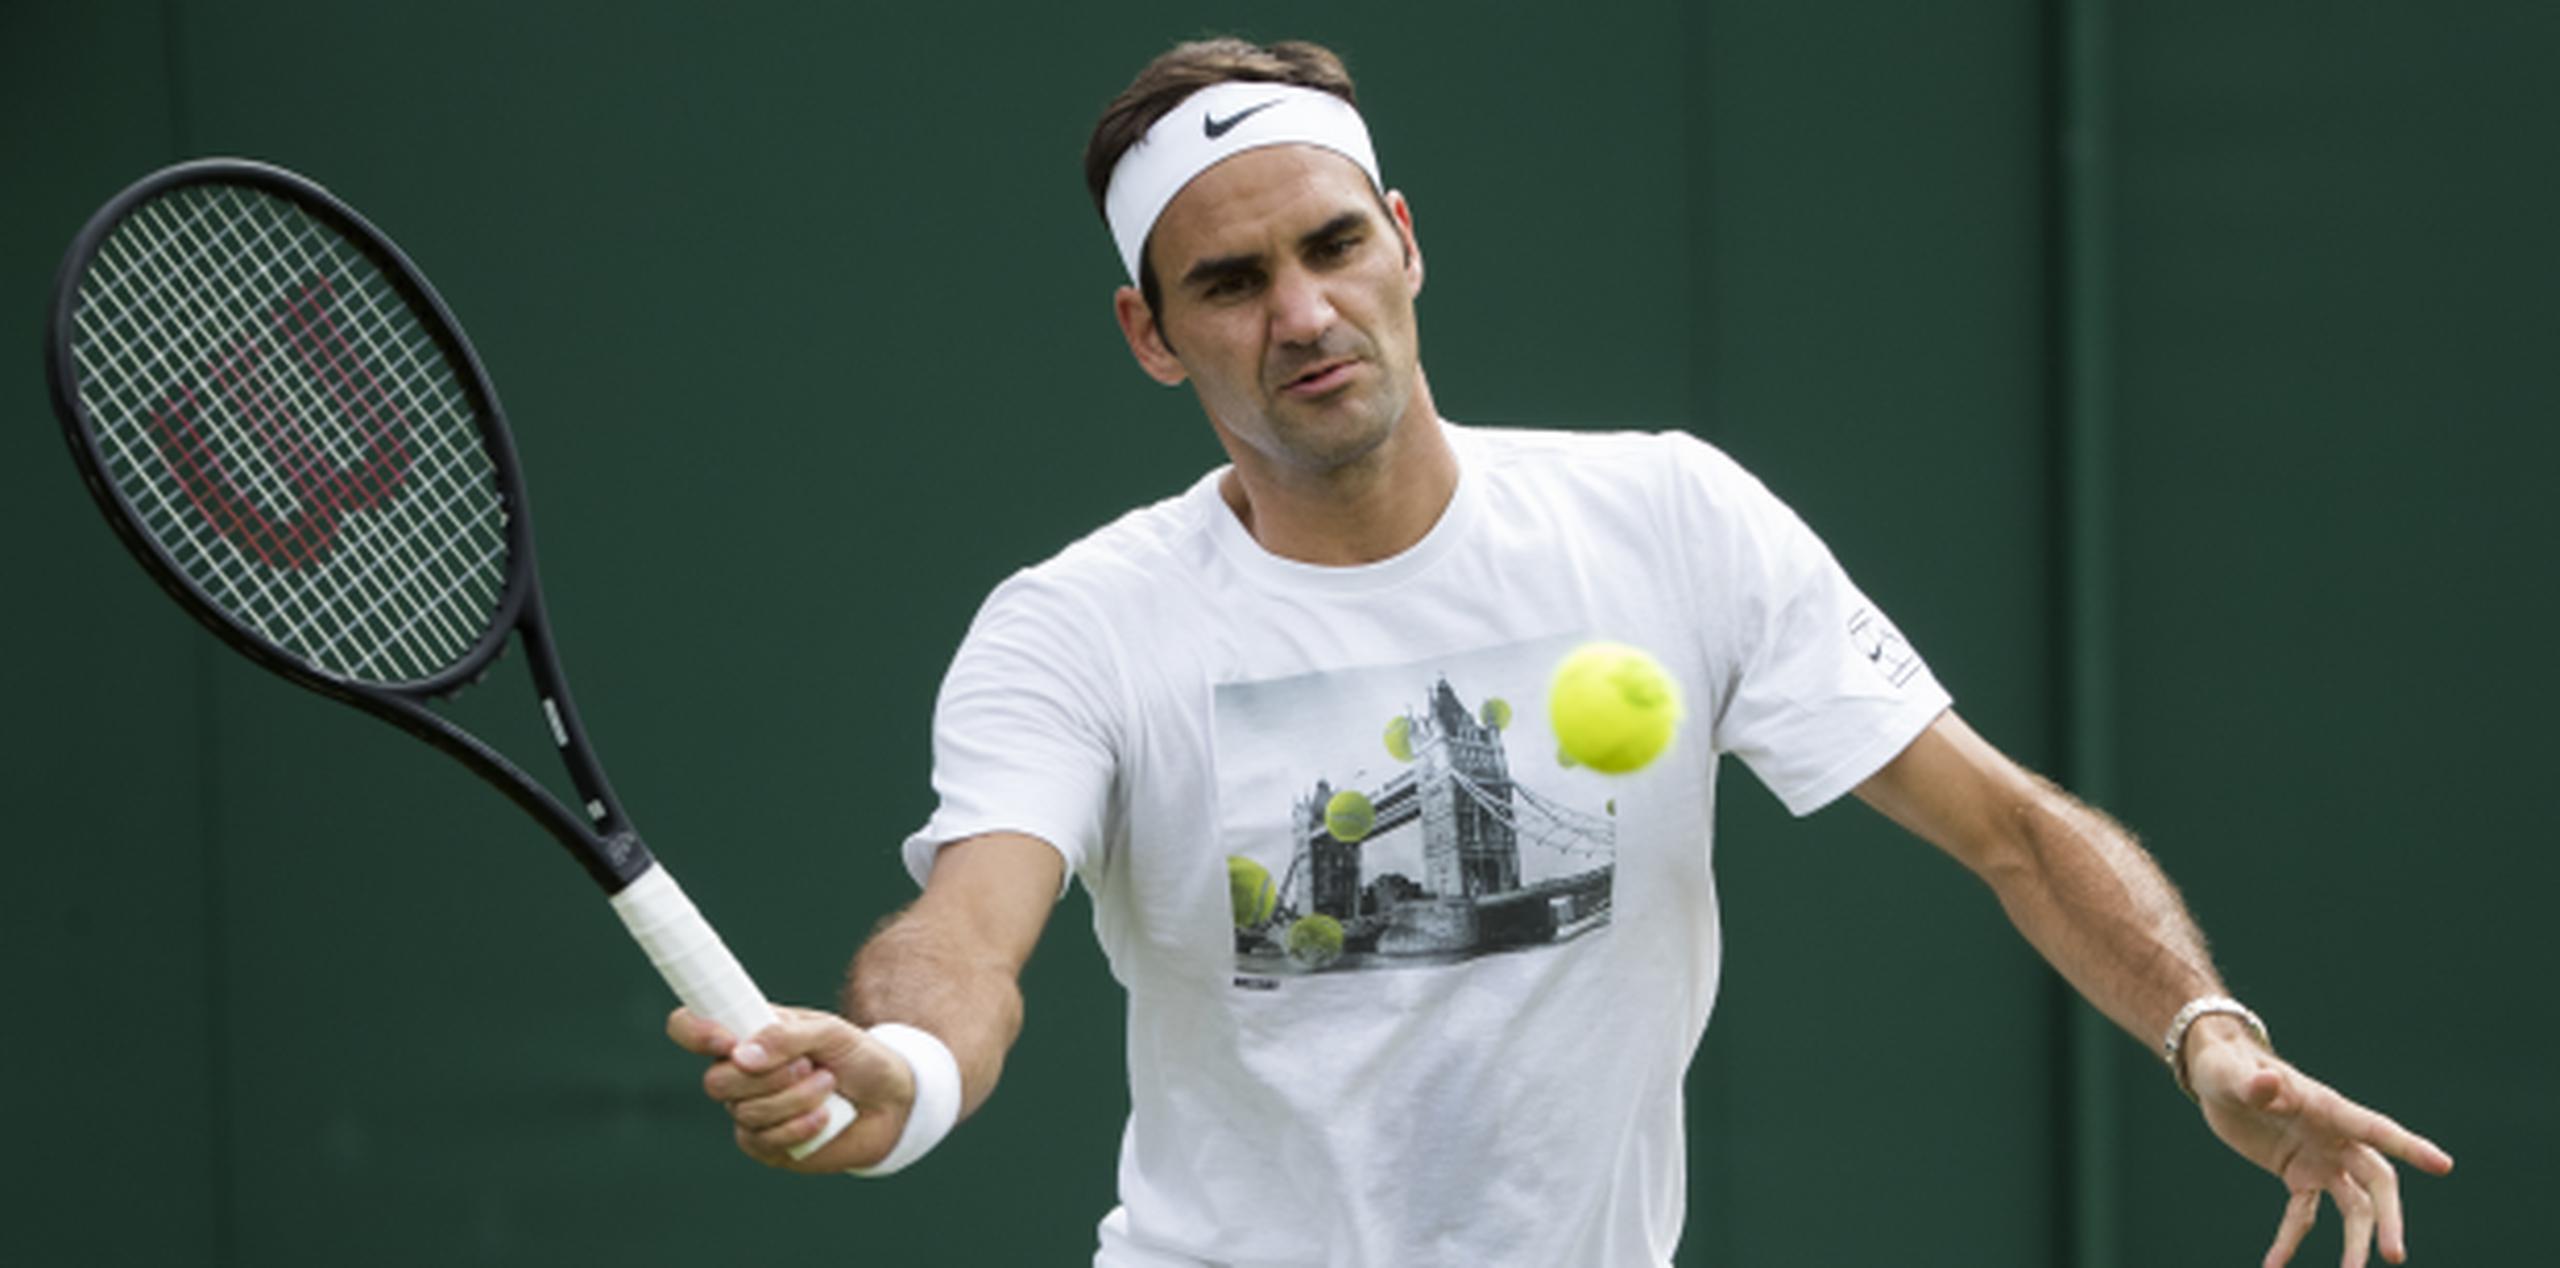 Muchos consideran a Federer el favorito para ganar Wimbledon por octava vez, un número sin precedente. (Archivo)